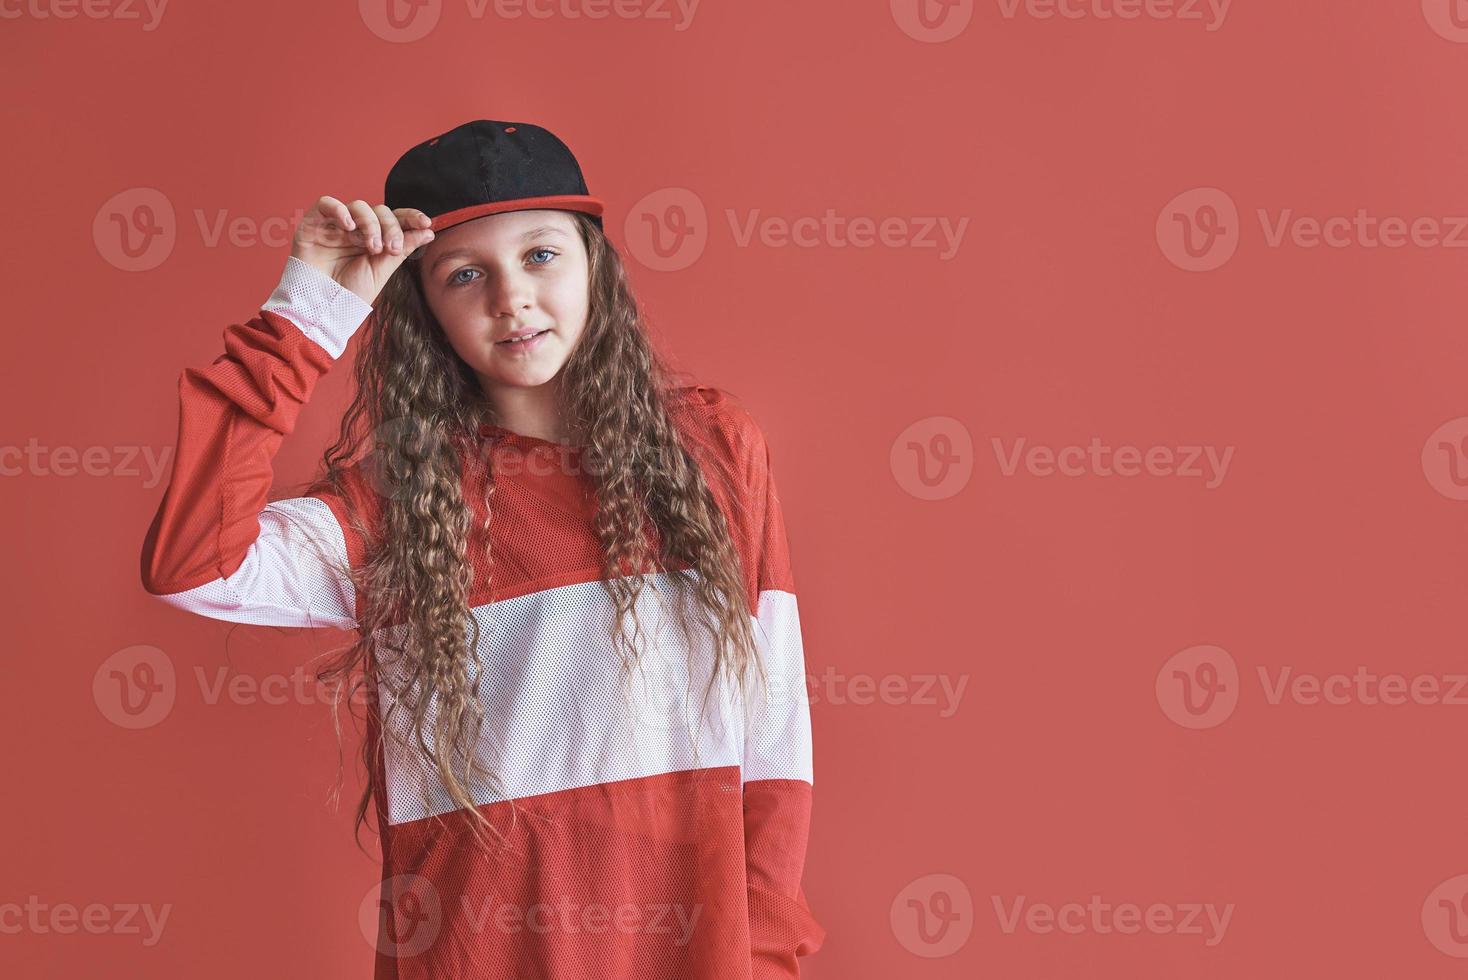 jovem linda linda garota dançando sobre fundo vermelho, estilo hip-hop moderno slim adolescente pulando foto